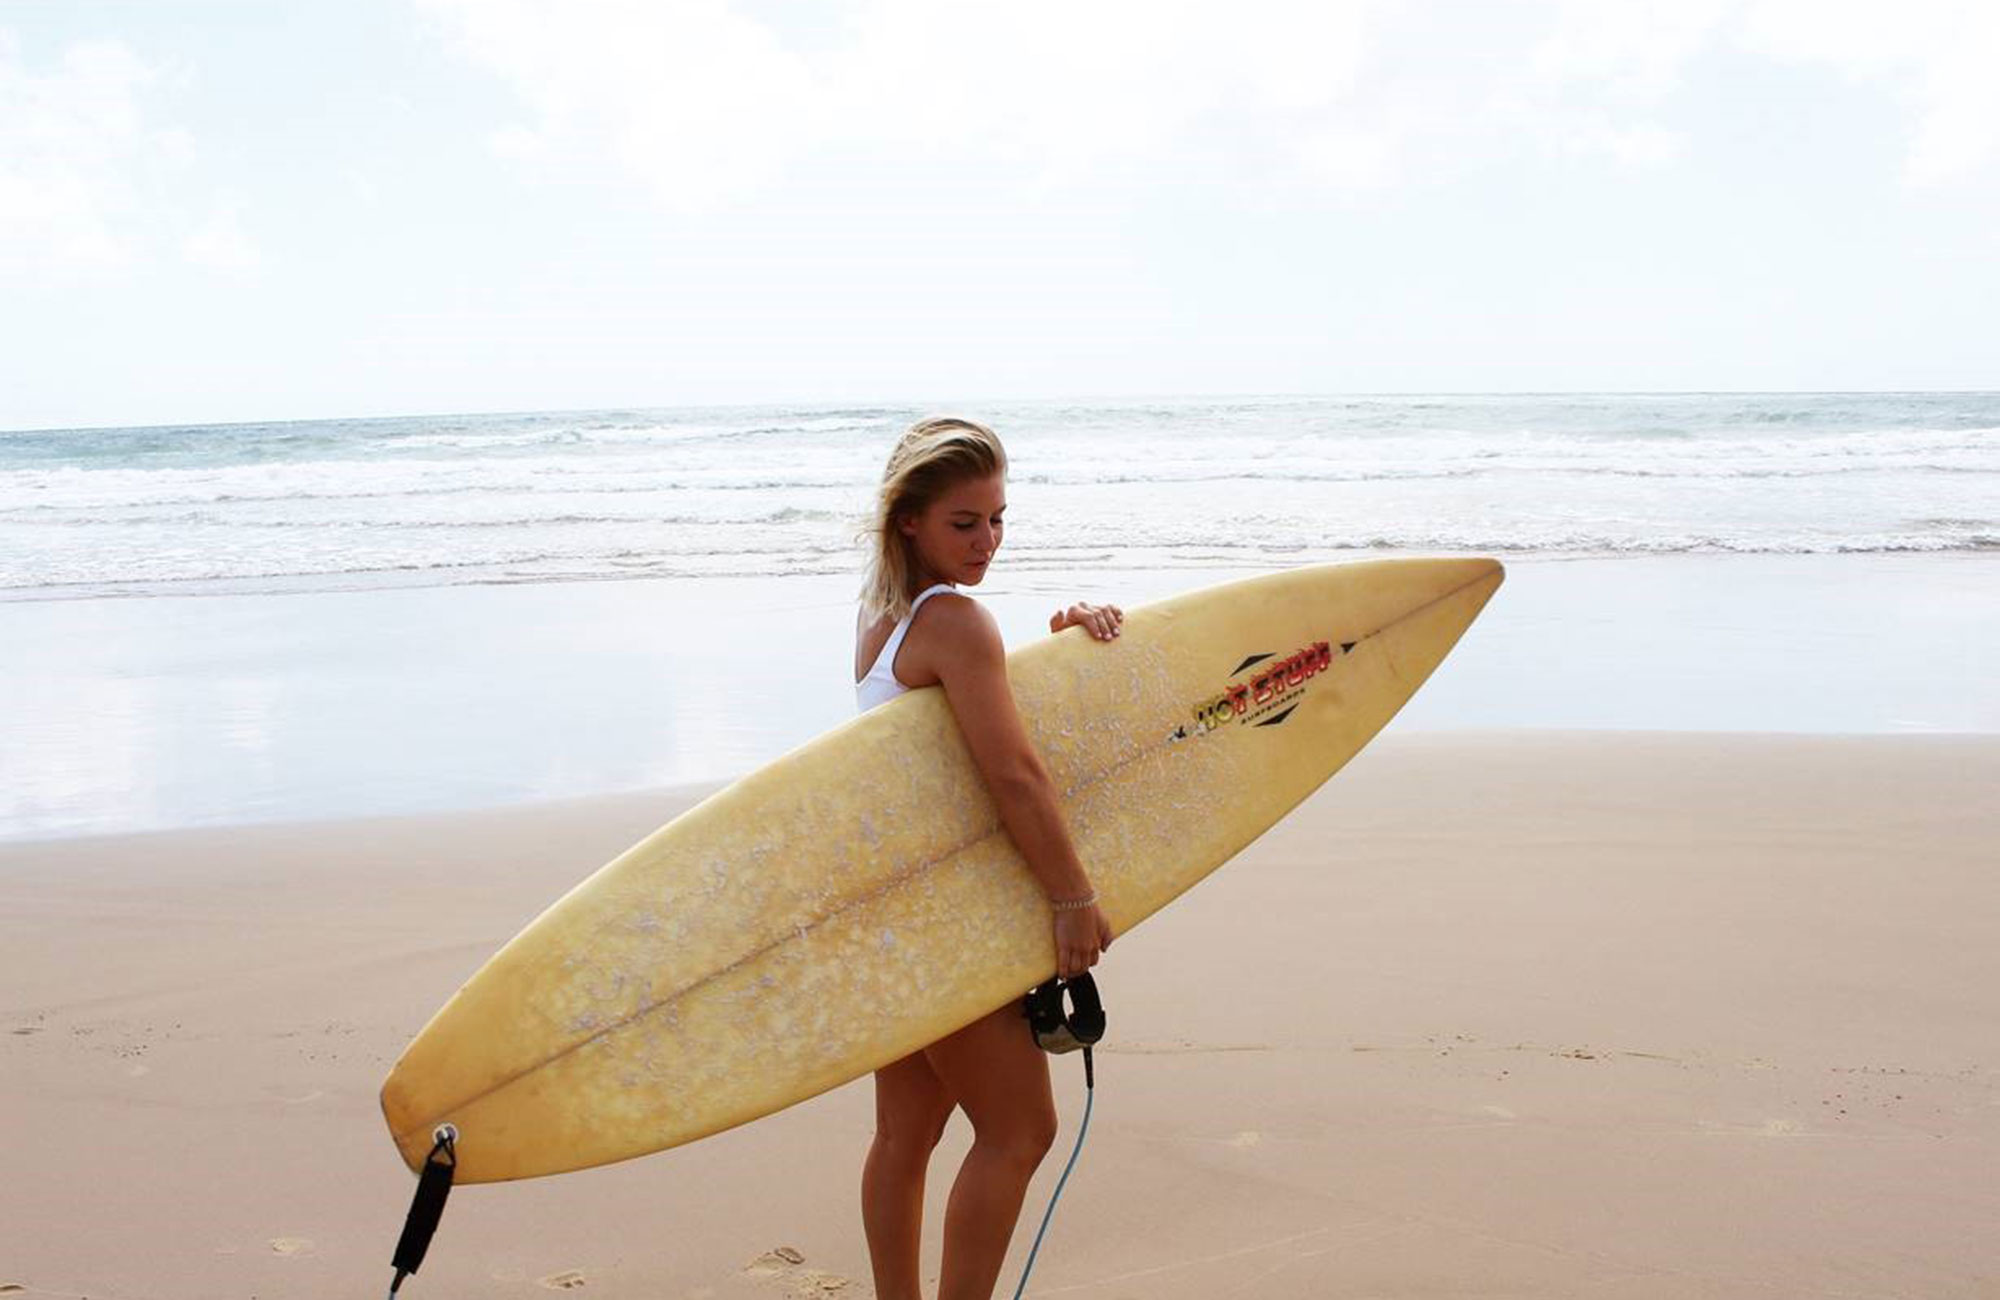 malin som studerar till sjuksköterska i australien med en surfbräda